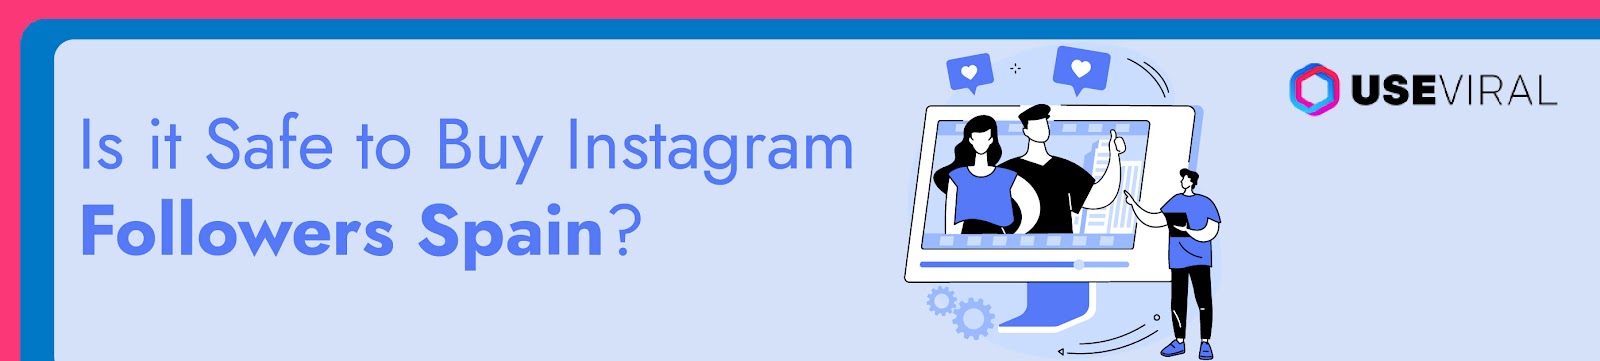 Is it Safe to Buy Instagram Followers Spain?